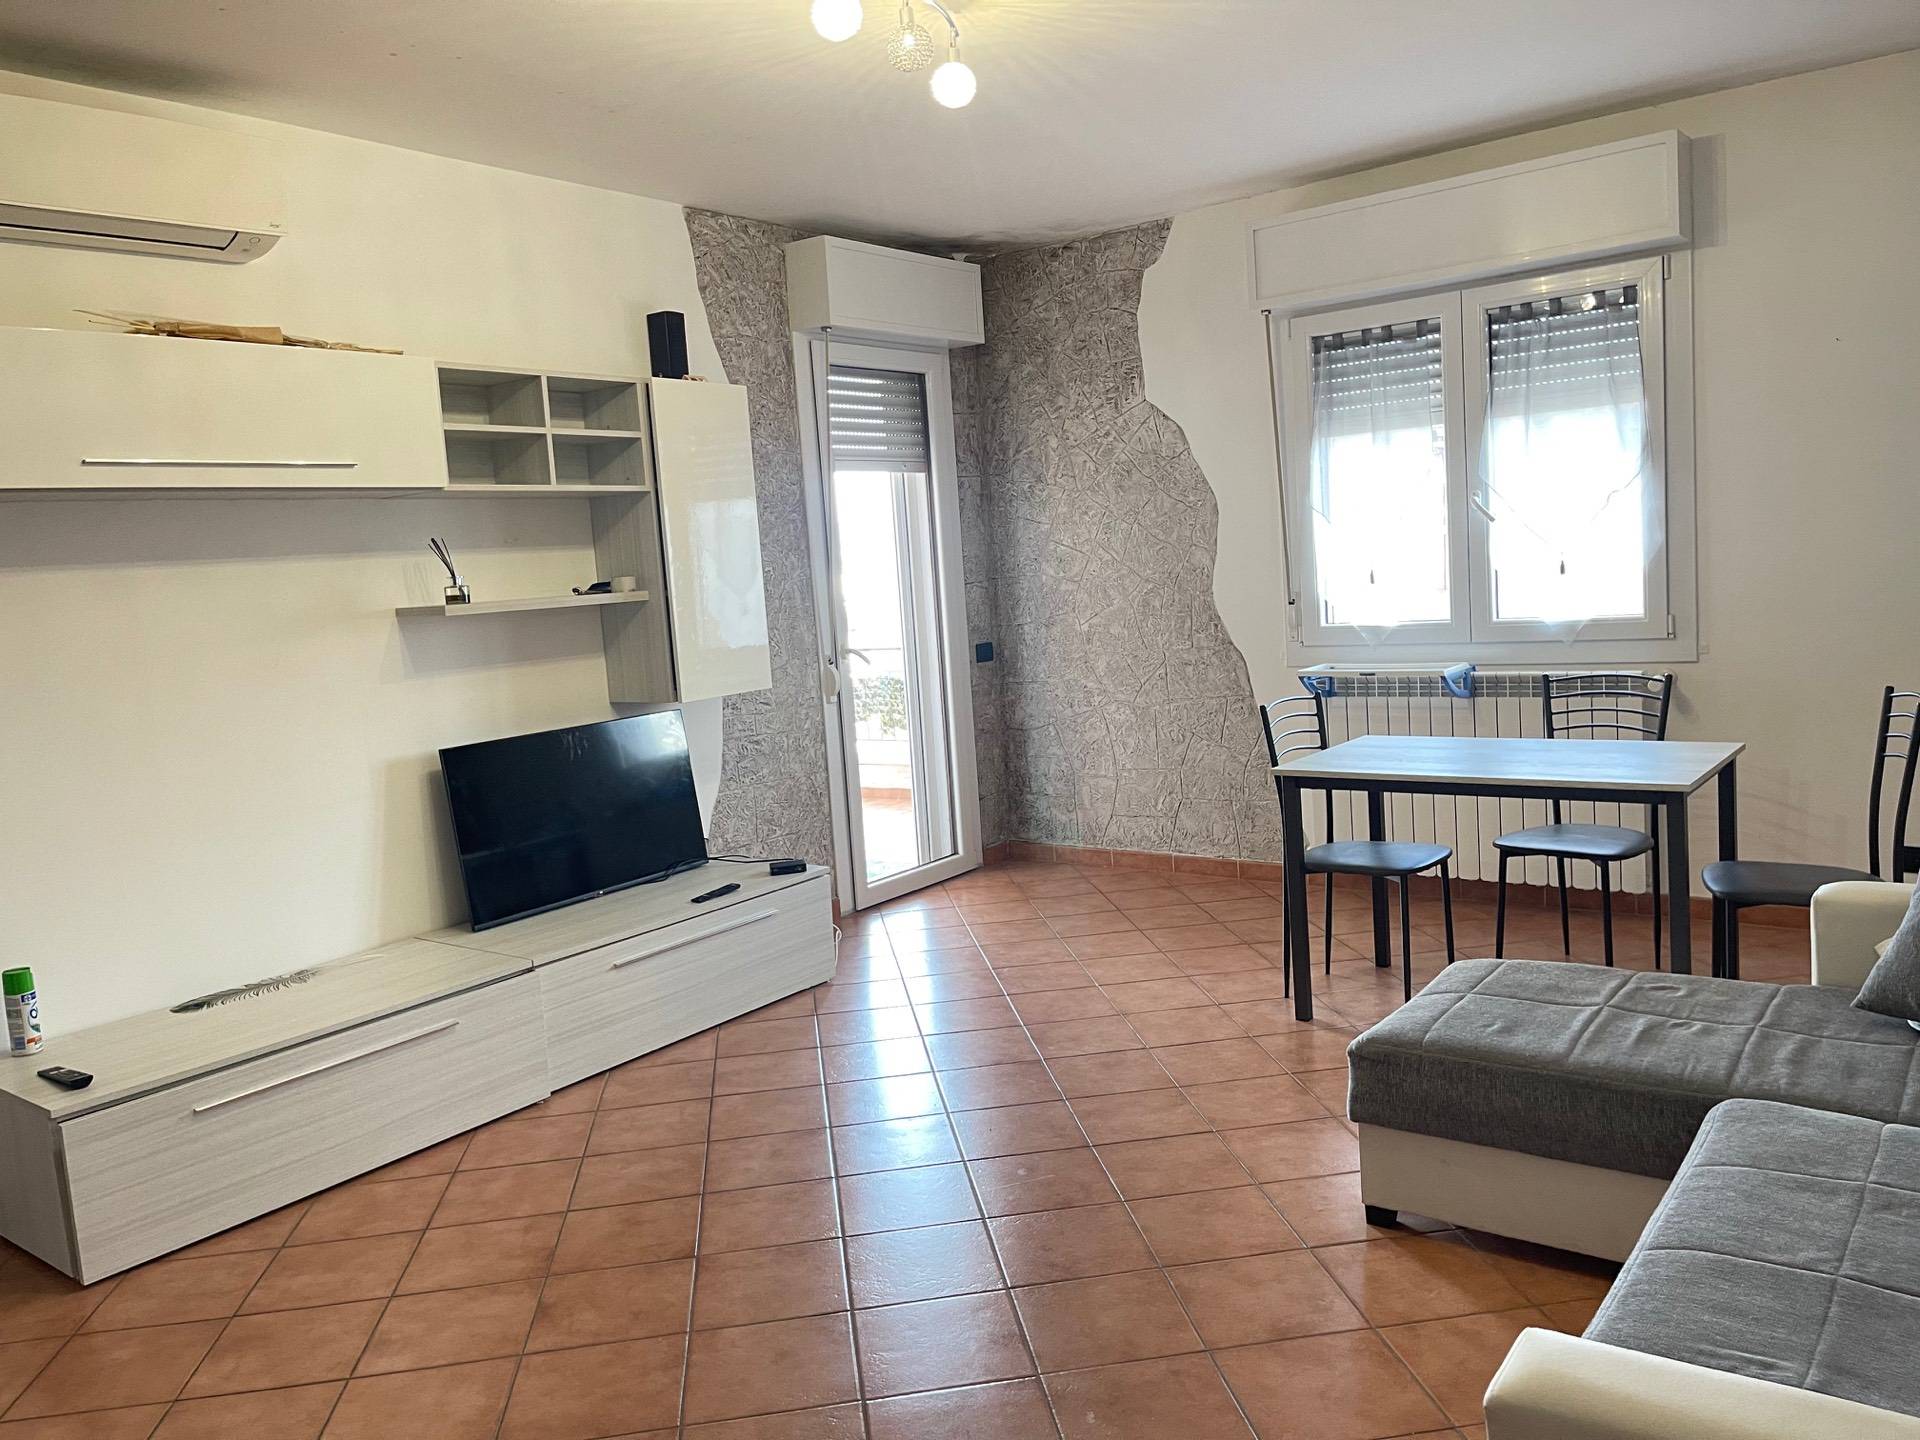 Appartamento in vendita a Pomezia, 2 locali, prezzo € 79.000 | PortaleAgenzieImmobiliari.it